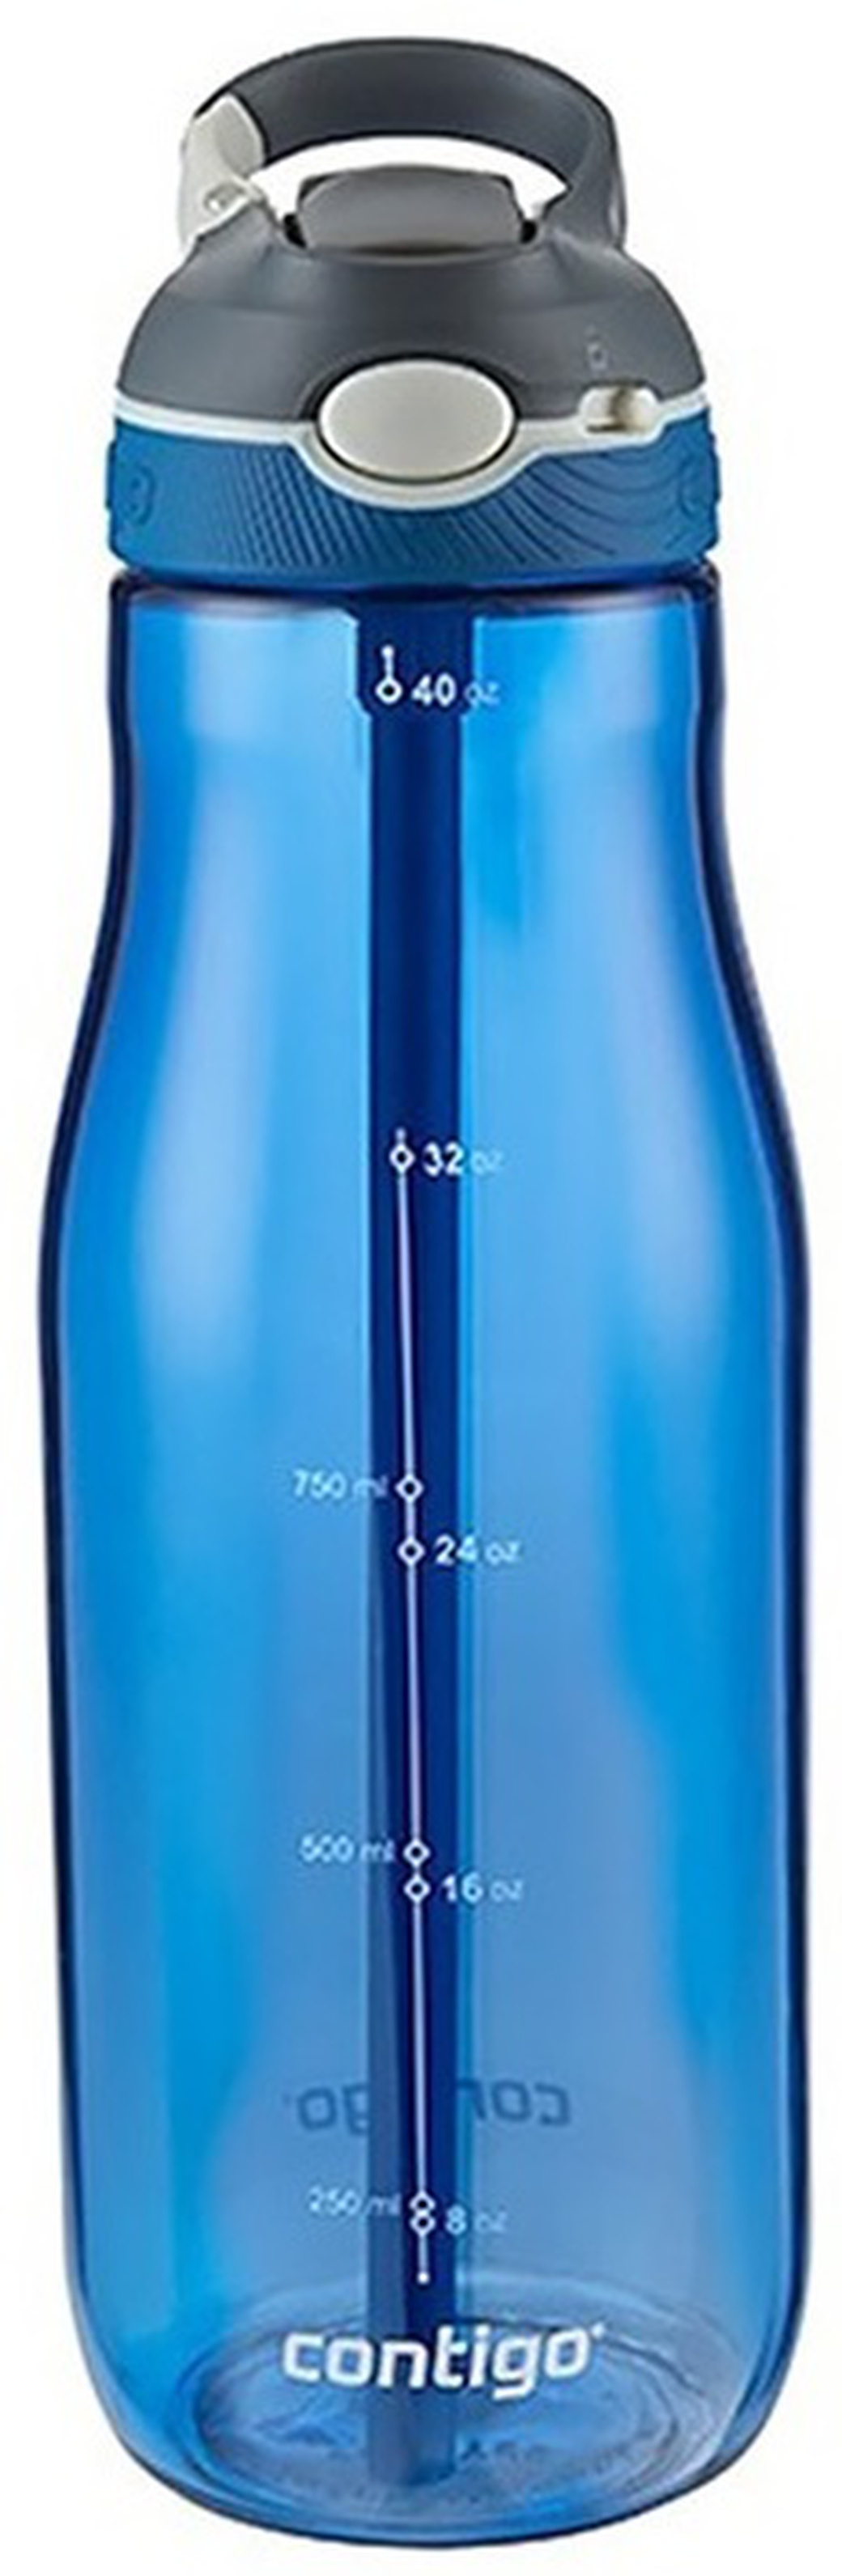 Бутылка Contigo Ashland (1.2 литра) синяя фото